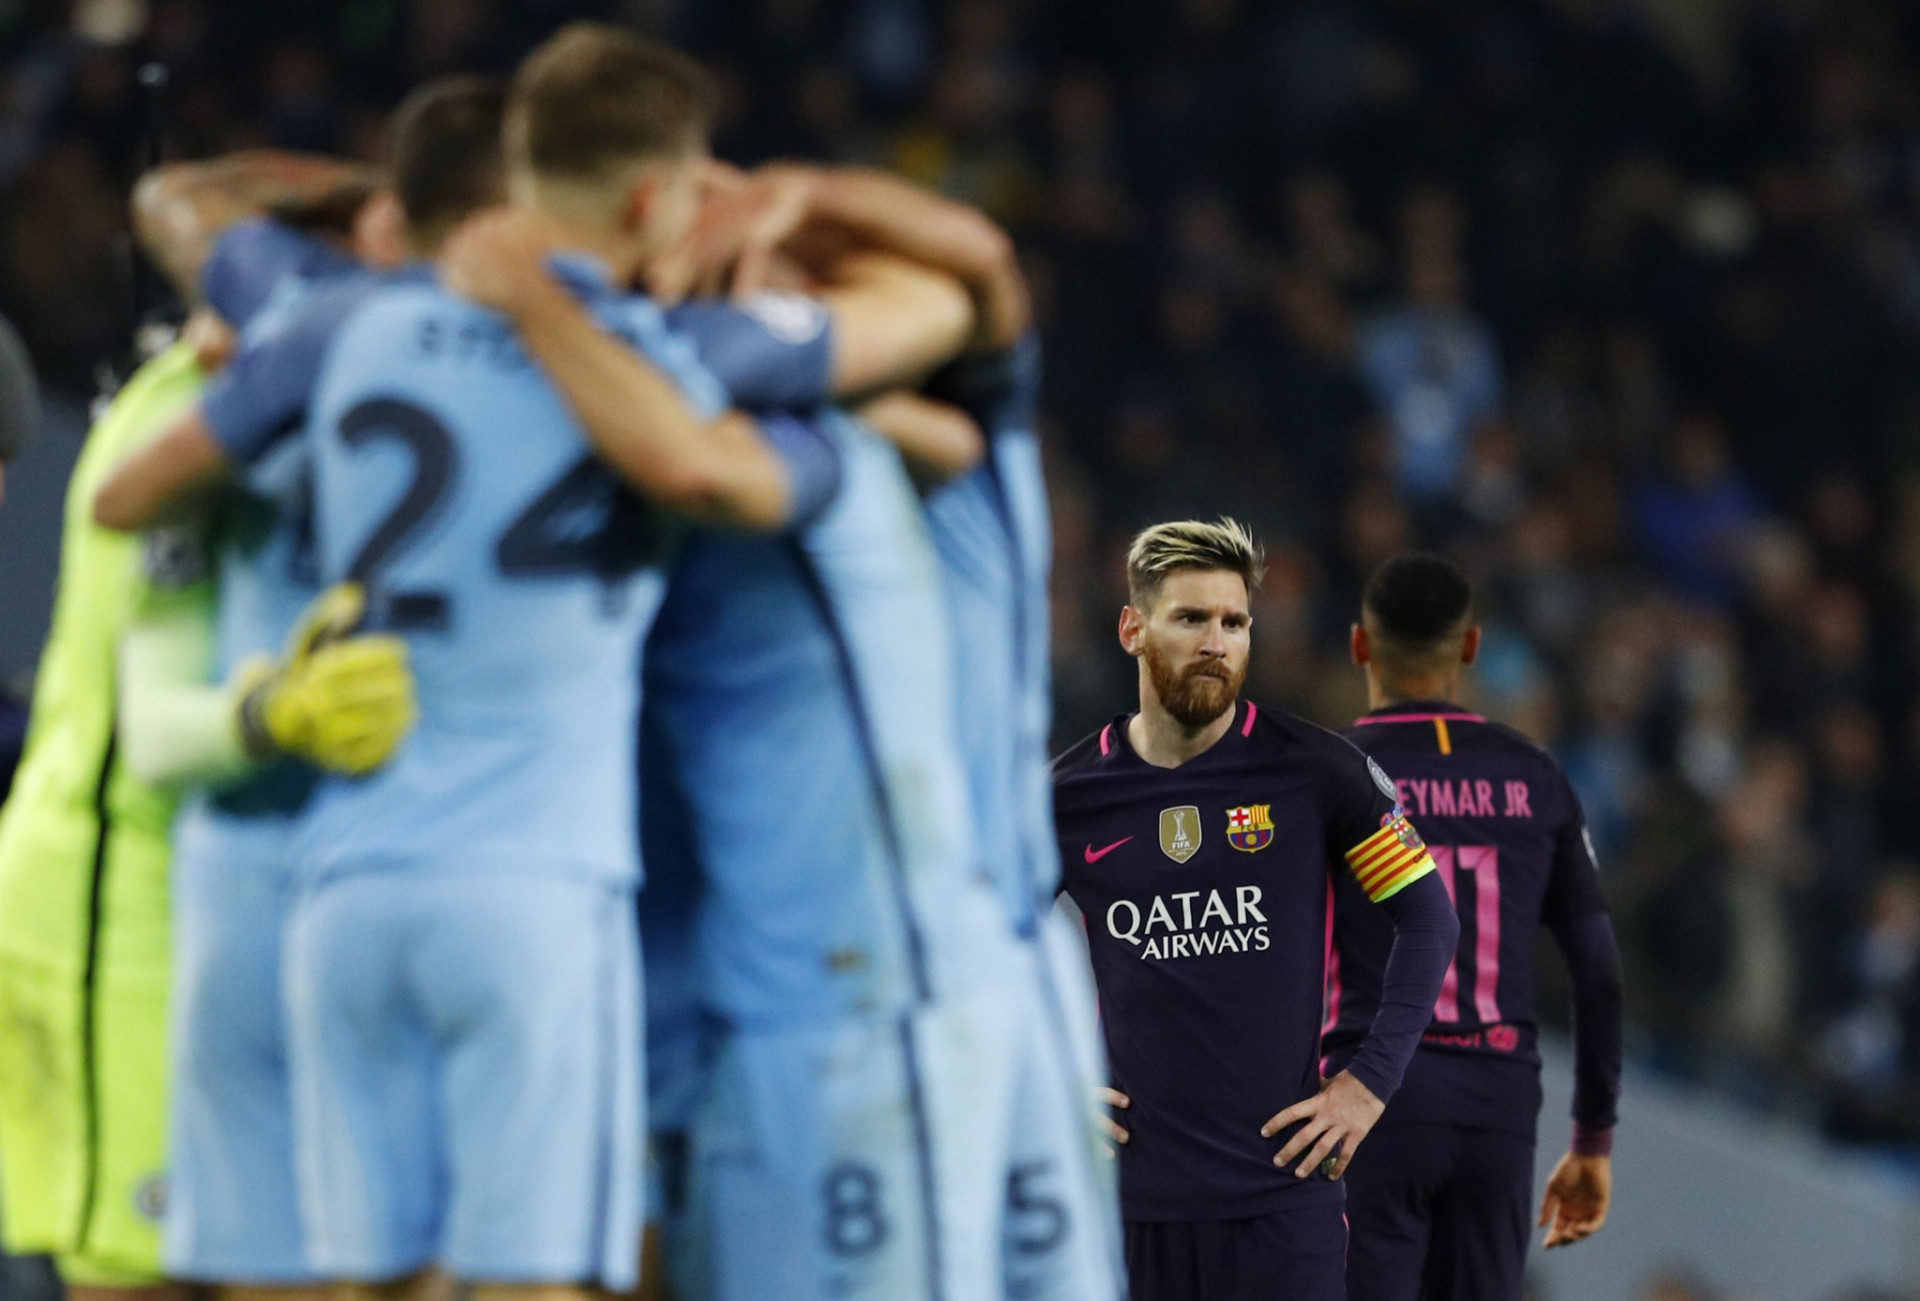 Manchester City zdolal tento týždeň v Lige majstrov slávnu Barcelonu s Lionelom Messim (na snímke vpravo) 3:1 a zatienil ju aj vo výške zárobkov v tejto elitnej súťaži.